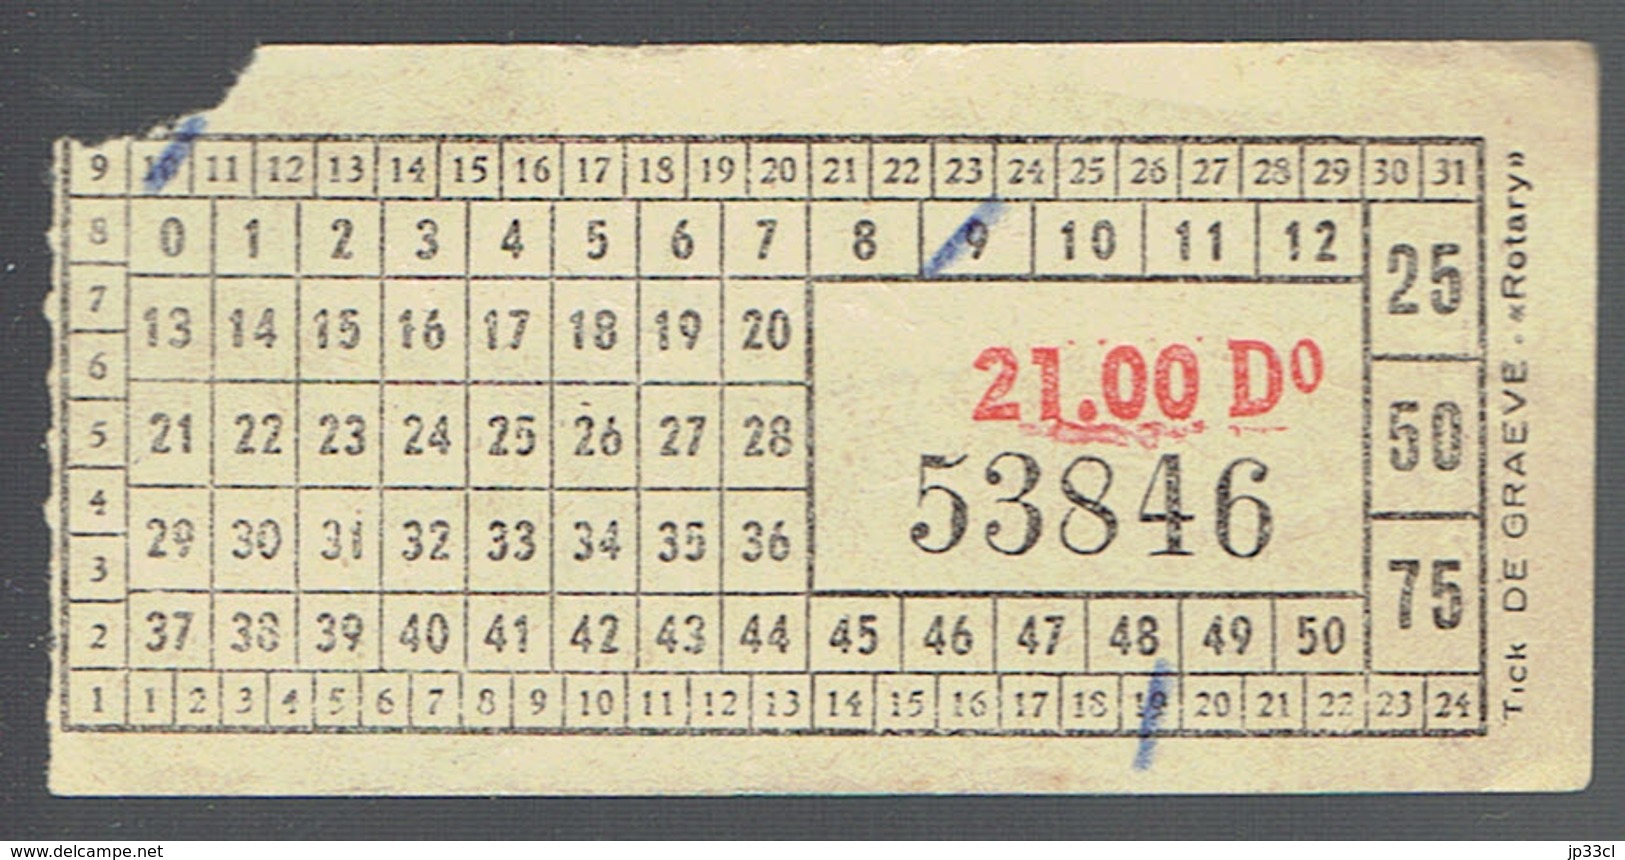 Ancien Ticket De Tram Belge Usagé "21.00 D° 53846" - Europa